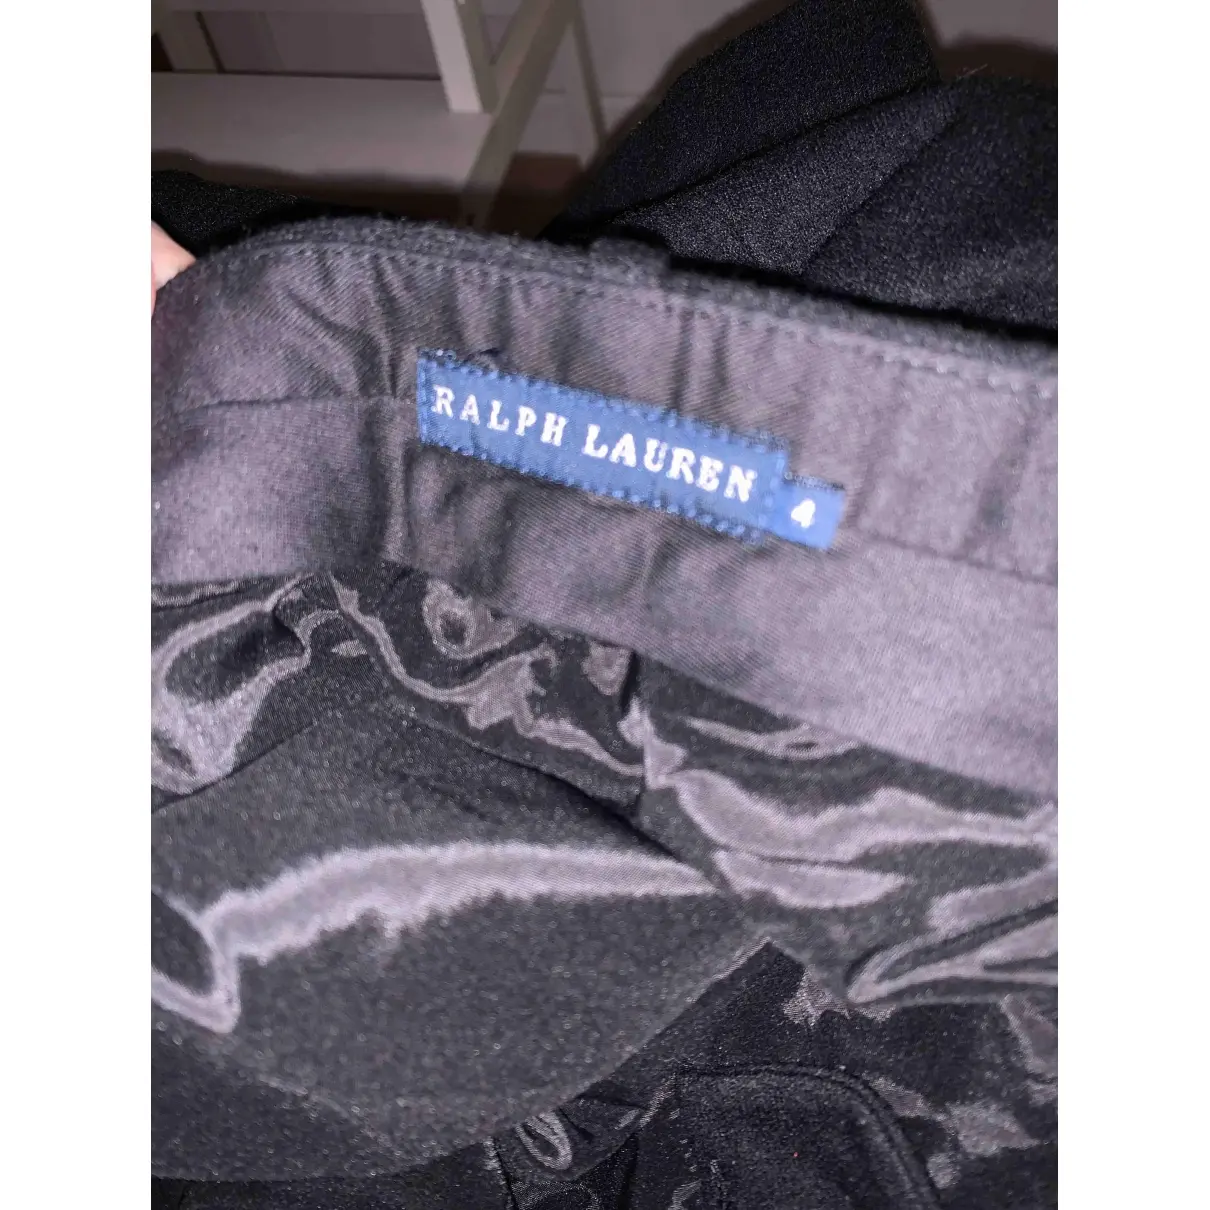 Buy Ralph Lauren Wool trousers online